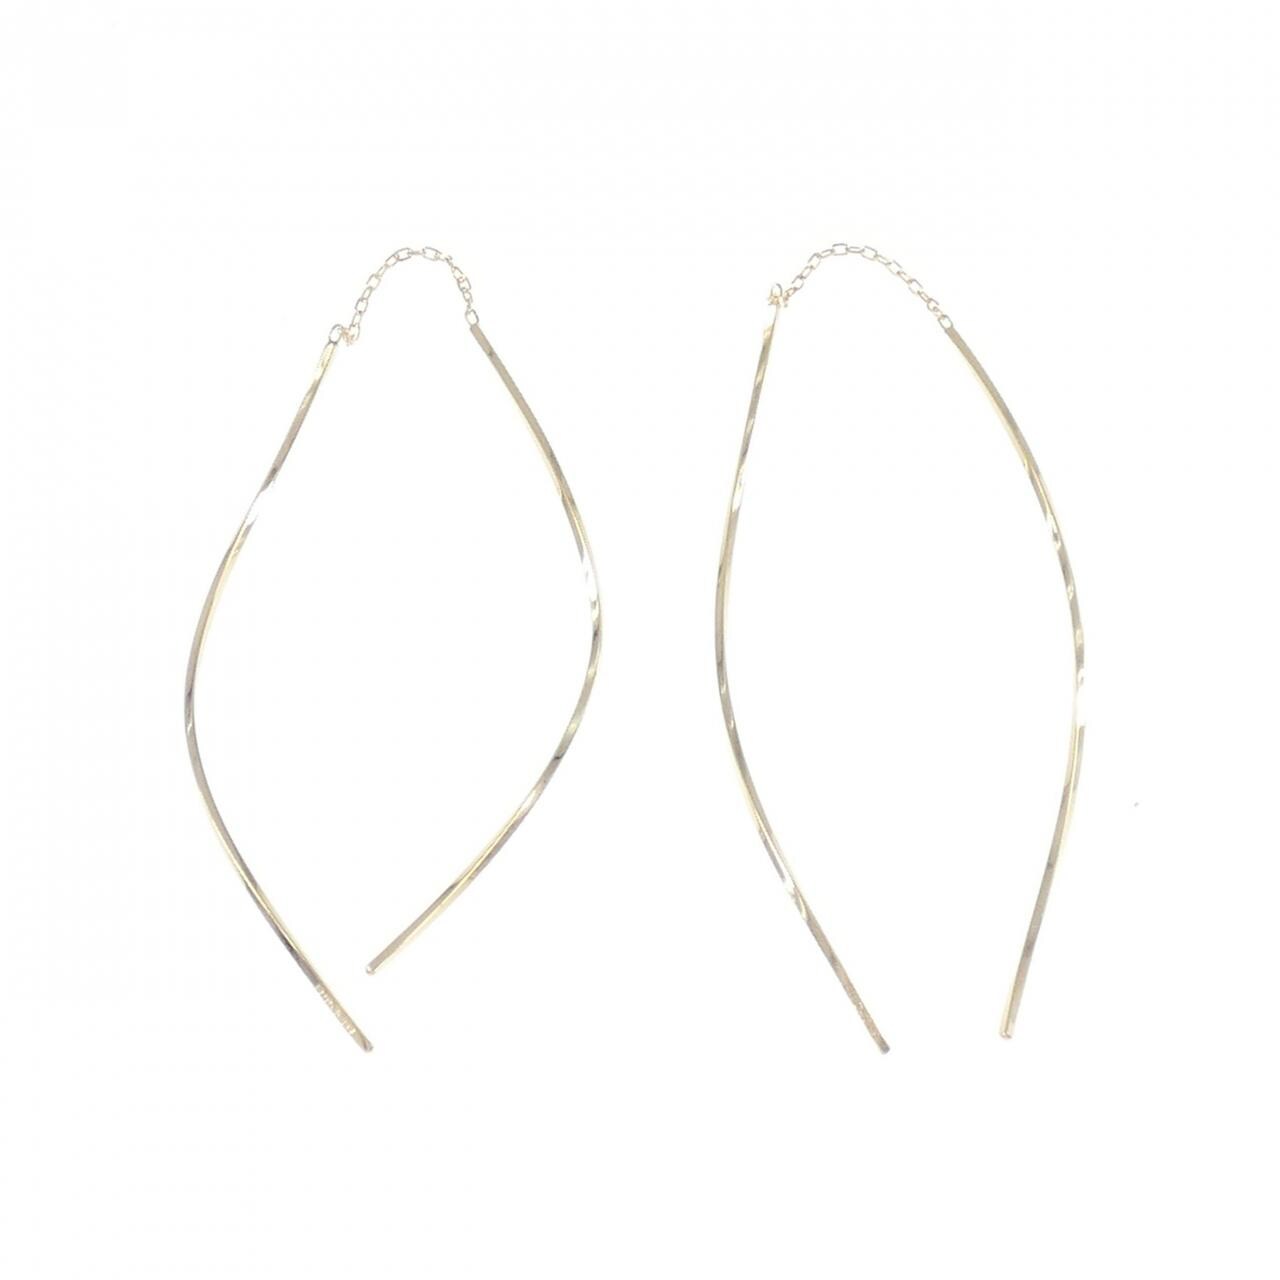 4゜C K18YG earrings